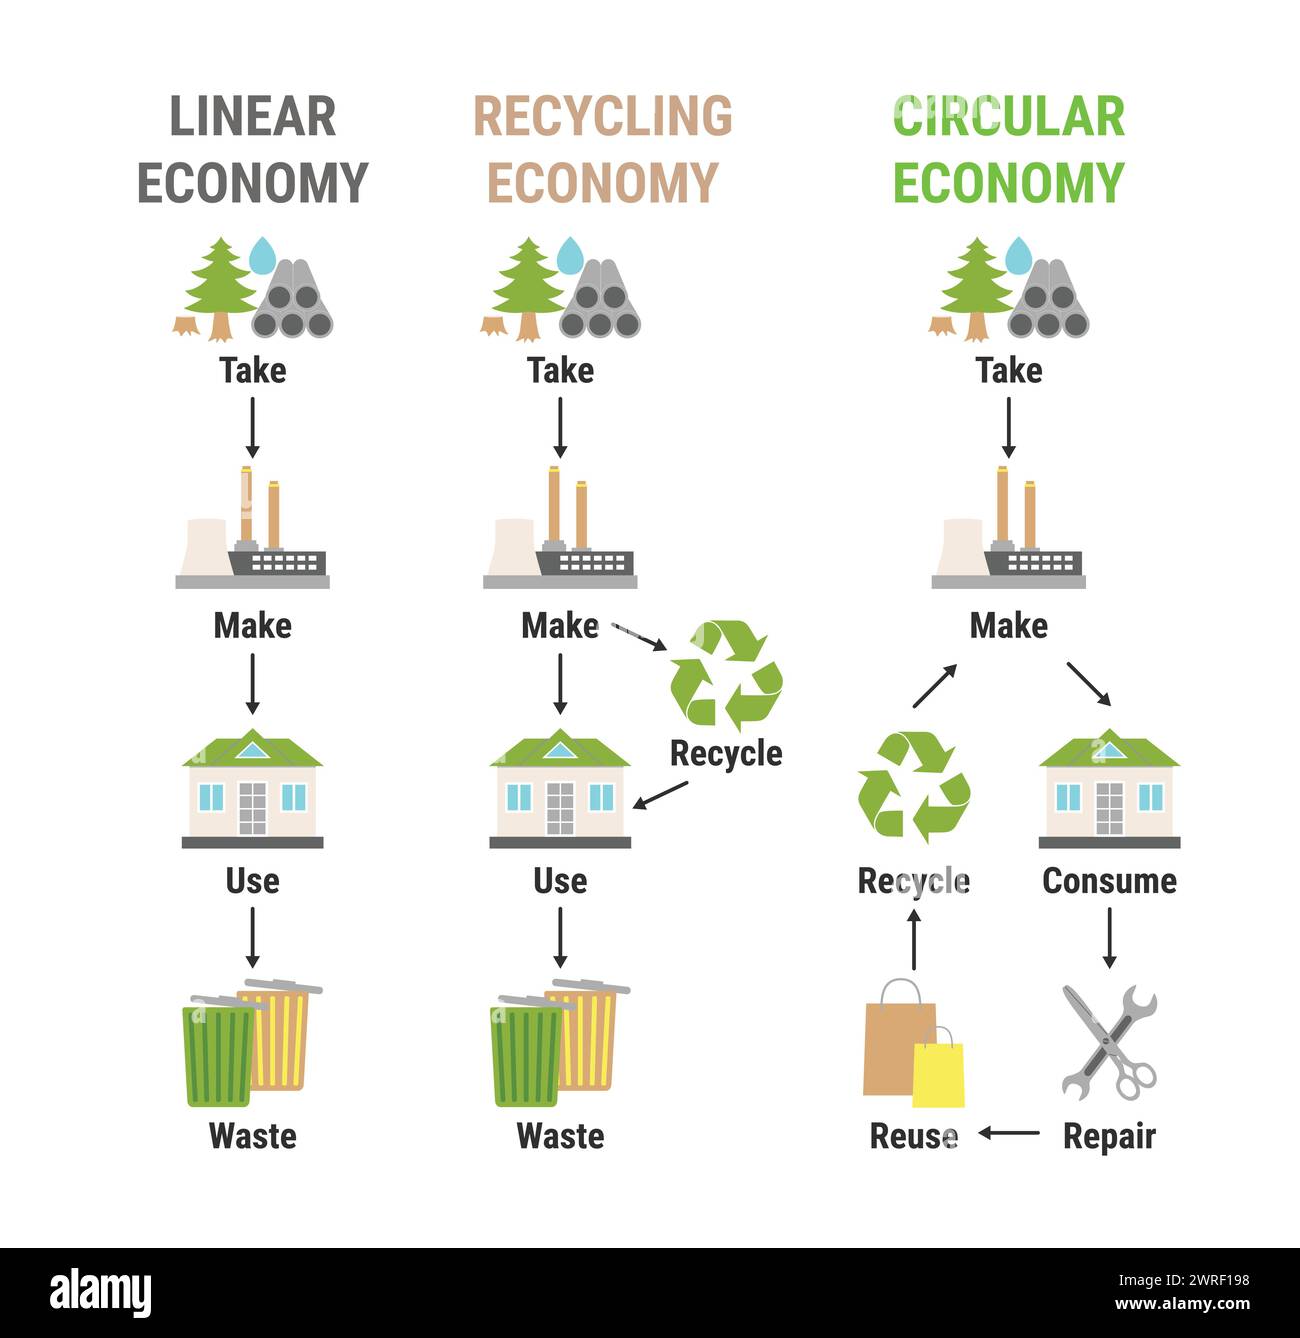 Infographie comparée de l’économie linéaire, du recyclage et de l’économie circulaire. Modèle économique durable. Schéma du cycle de vie du produit, de la matière première au produit Illustration de Vecteur